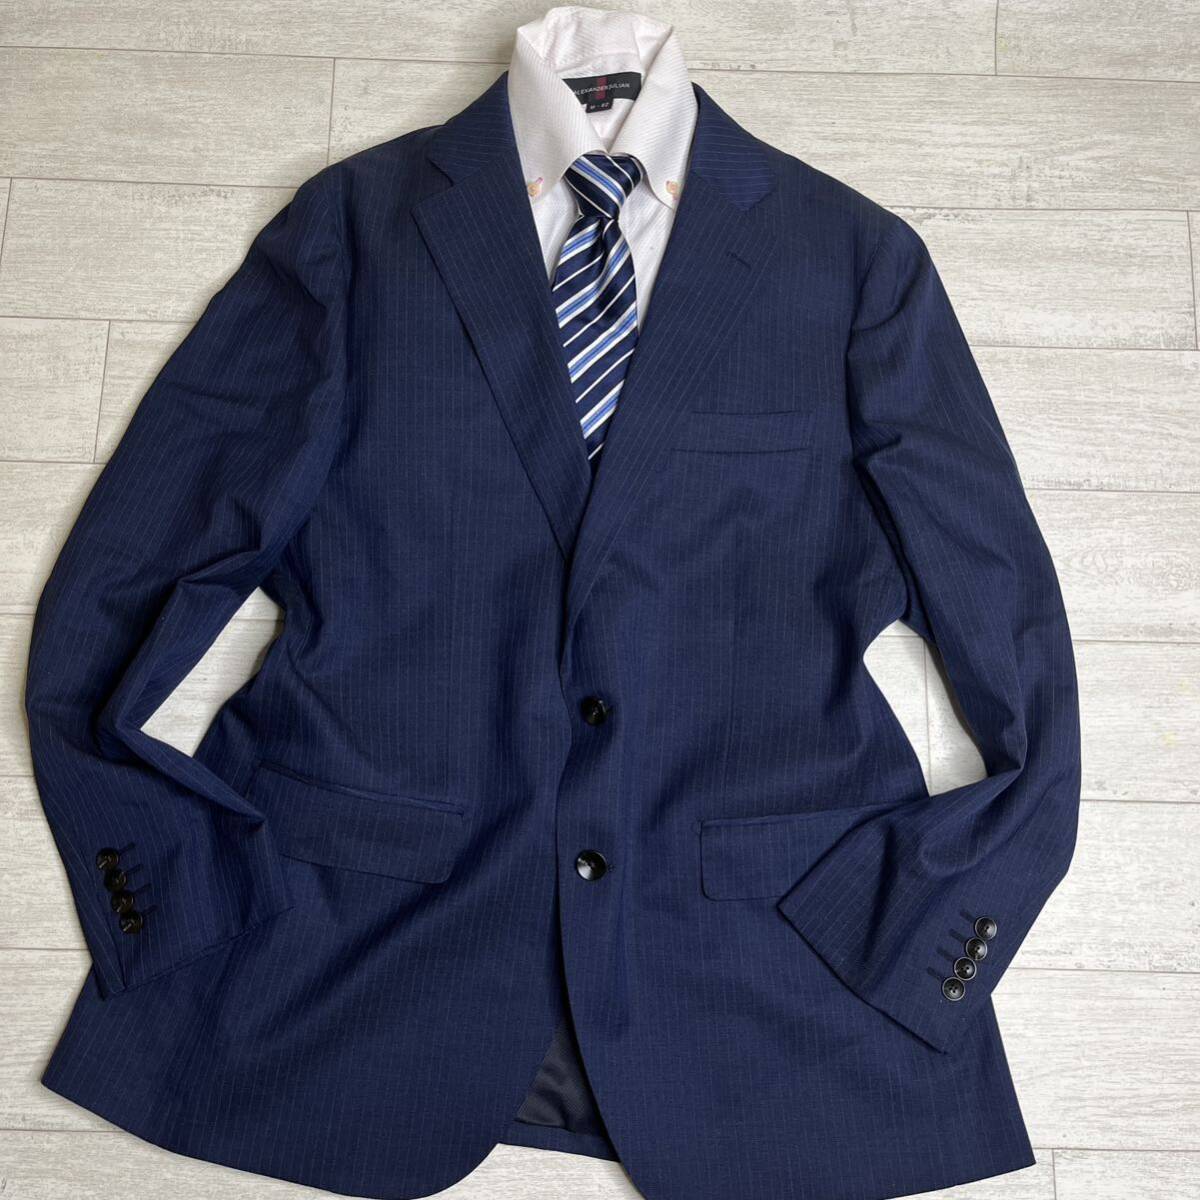 美品 スーツセレクト スリム 2つボタン シングルスーツ ノータック 春夏 ネイビー BB7 サイズLビジネス テーラードジャケット ネイビー の画像2